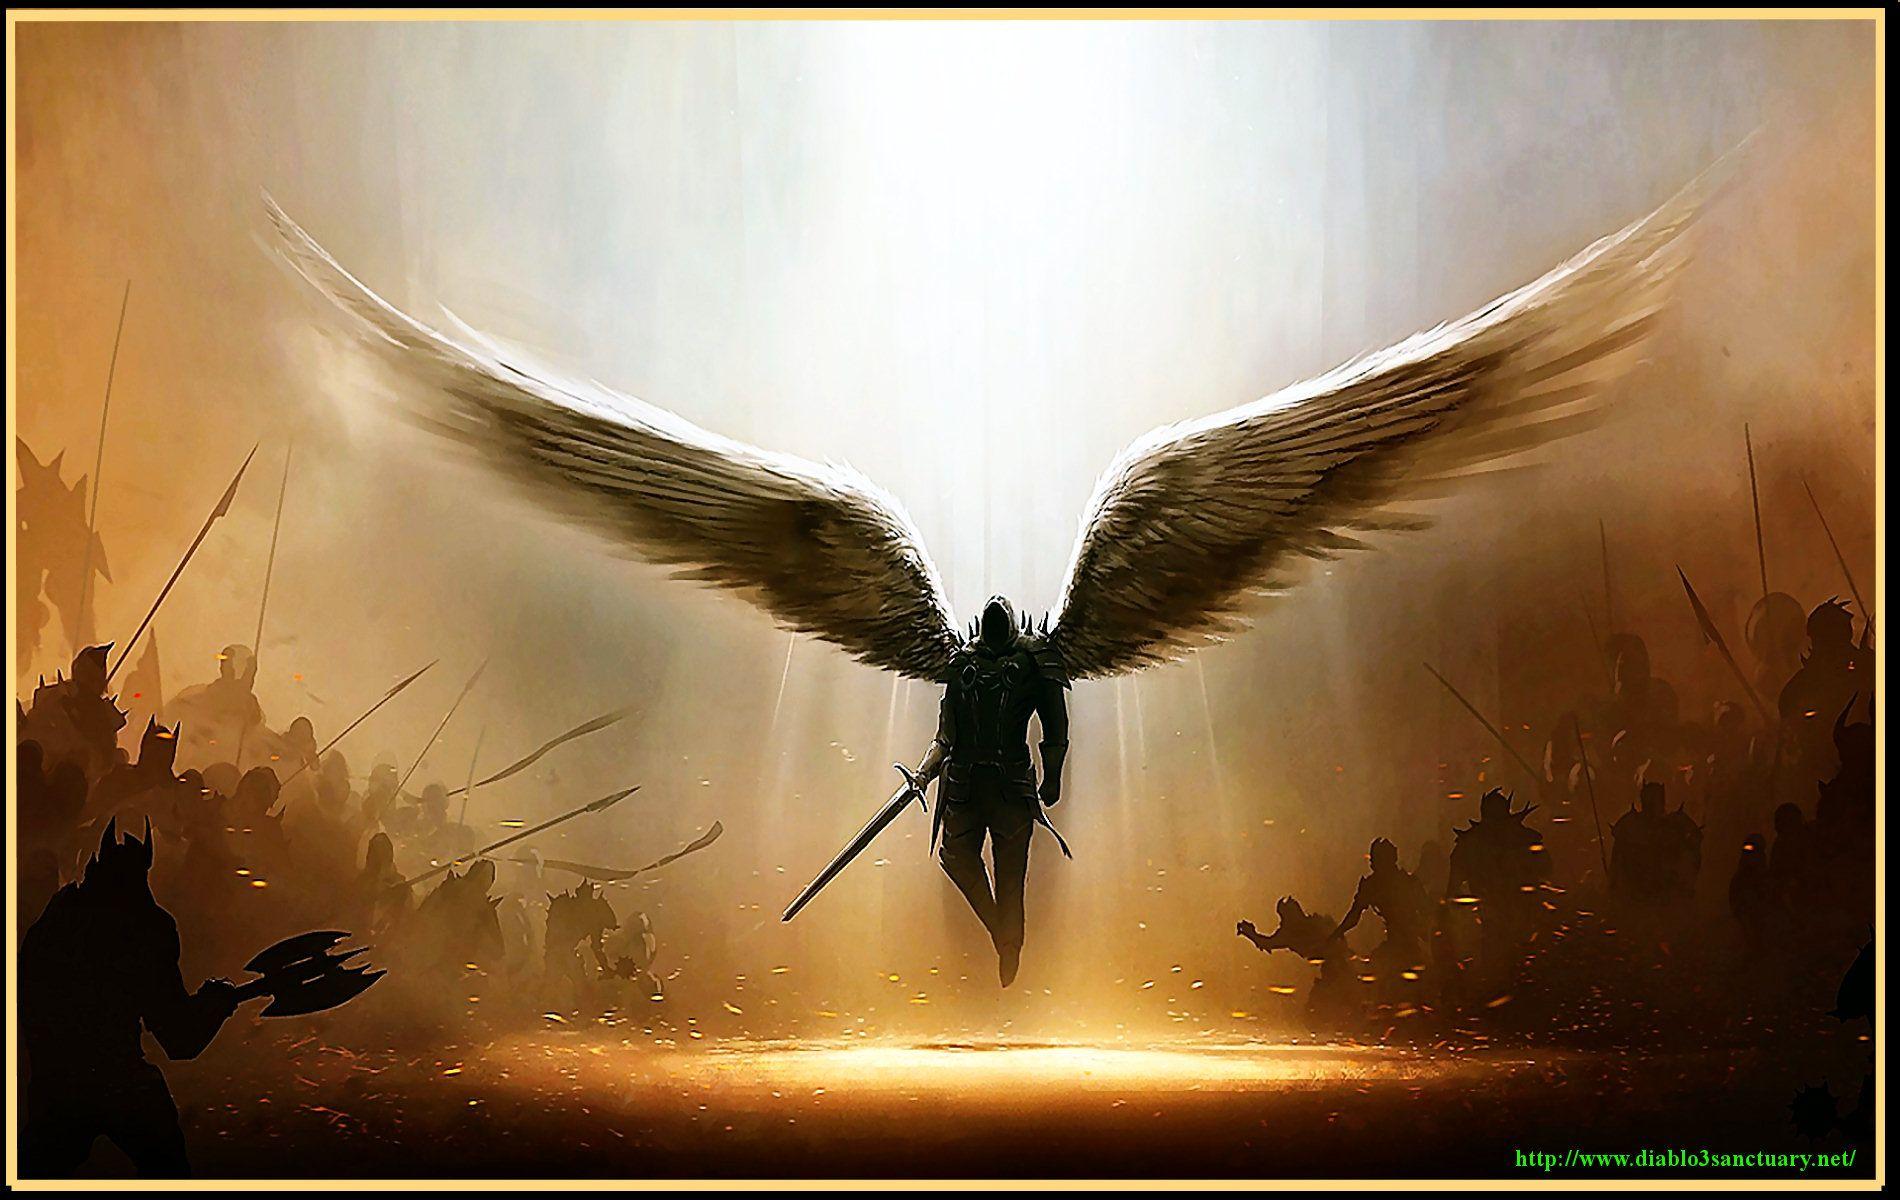 Archangel Gabriel Wallpaper. Archangel Wallpaper, Archangel Gabriel Wallpaper and Archangel Michael Wallpaper